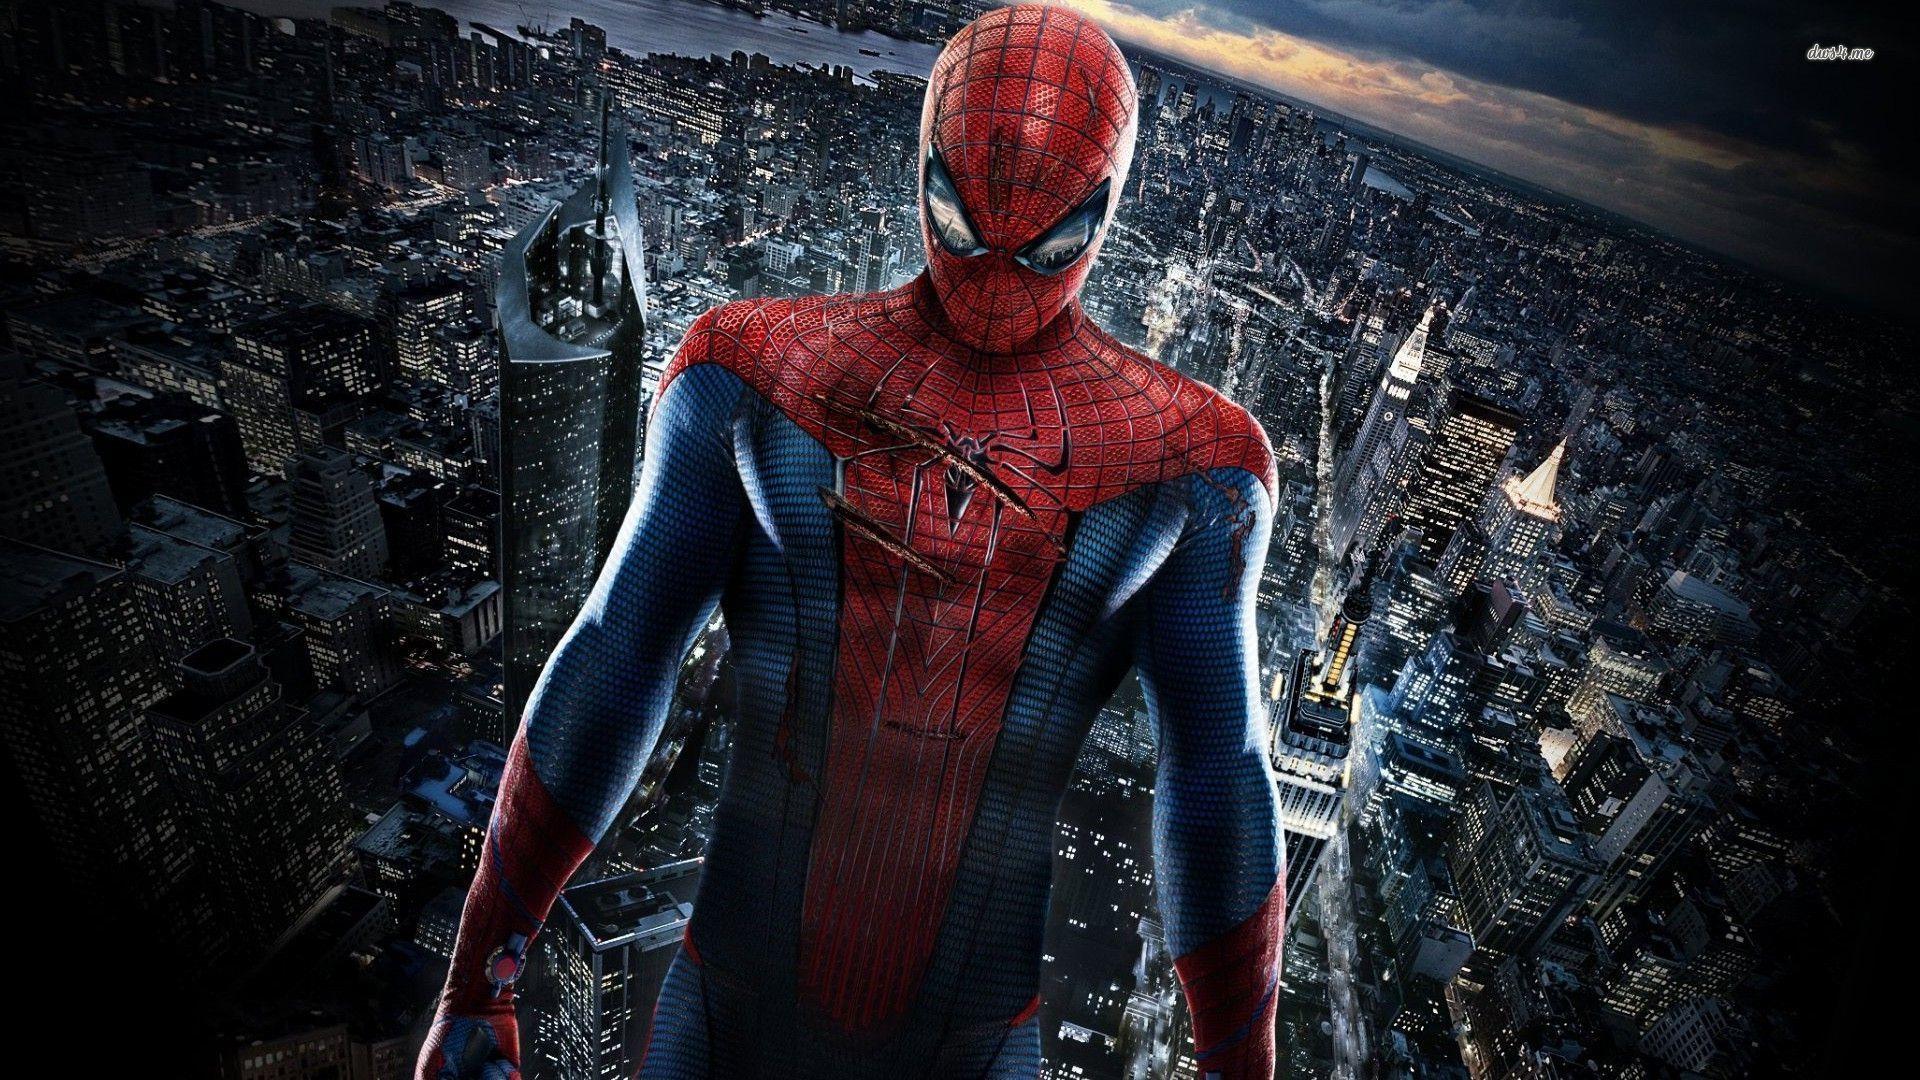 4K Spiderman Wallpapers - Top Free 4K Spiderman ...